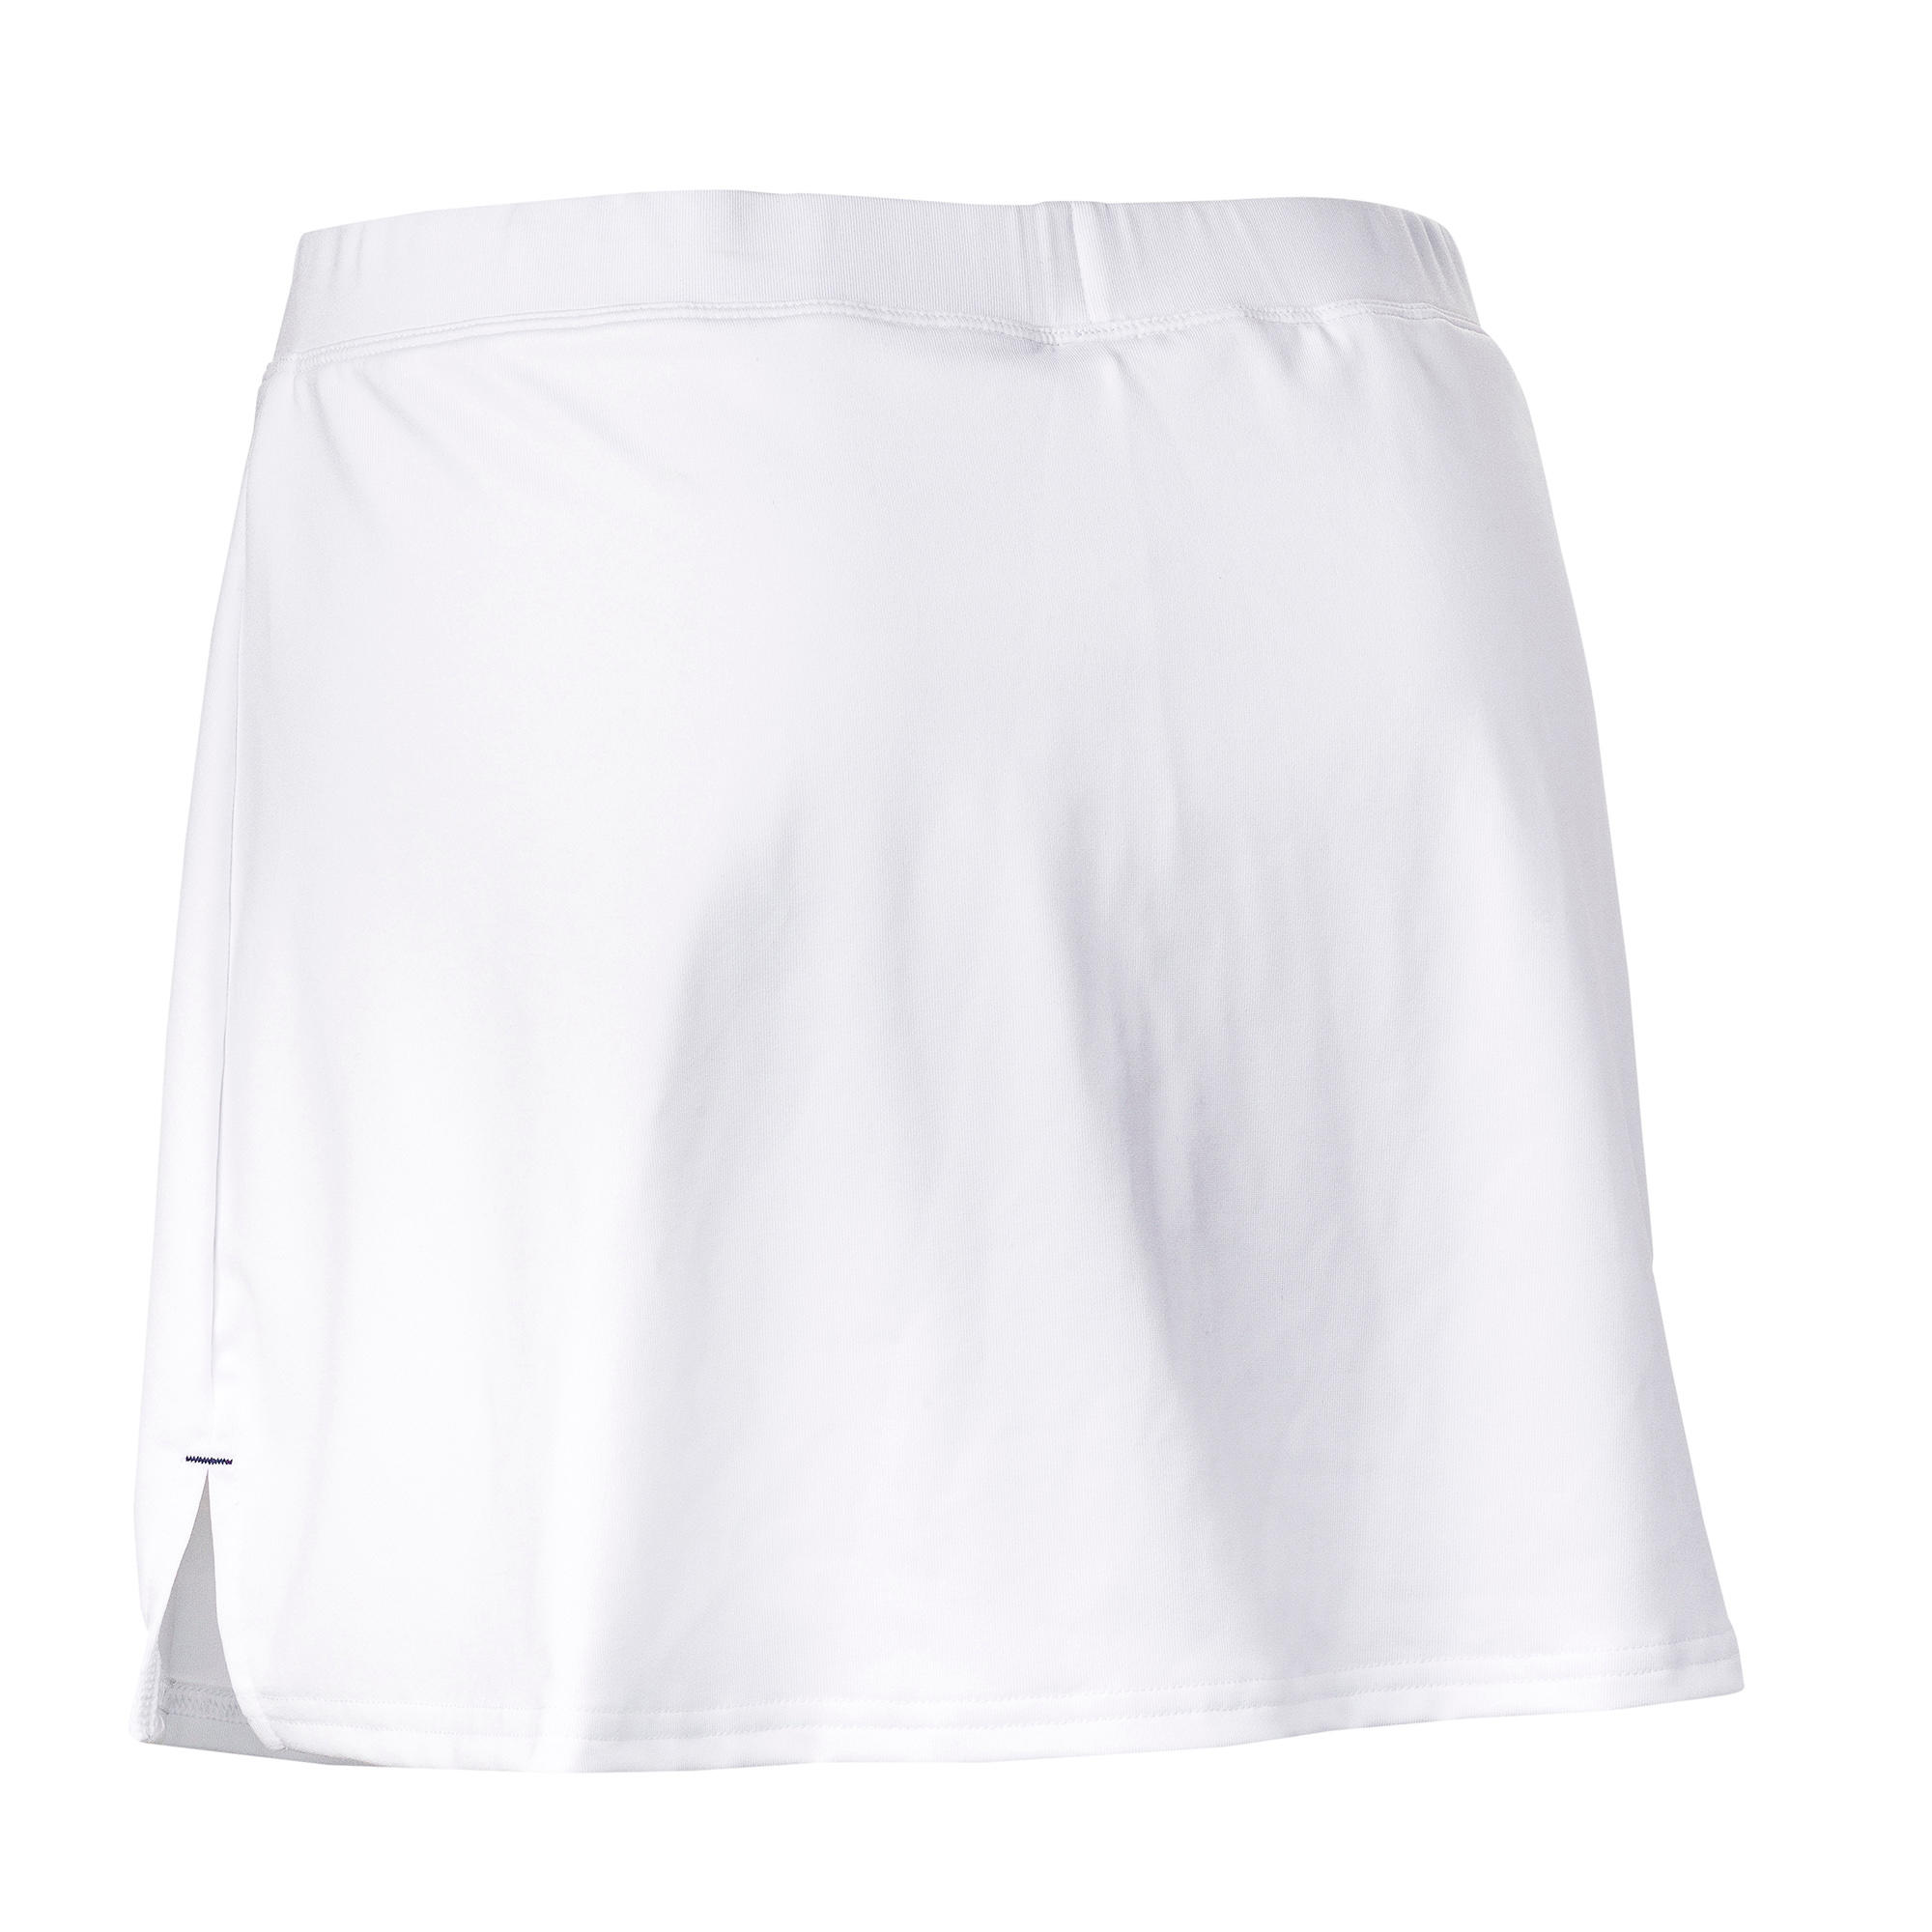 FHSK500 Women's Field Hockey Skirt - White 4/4